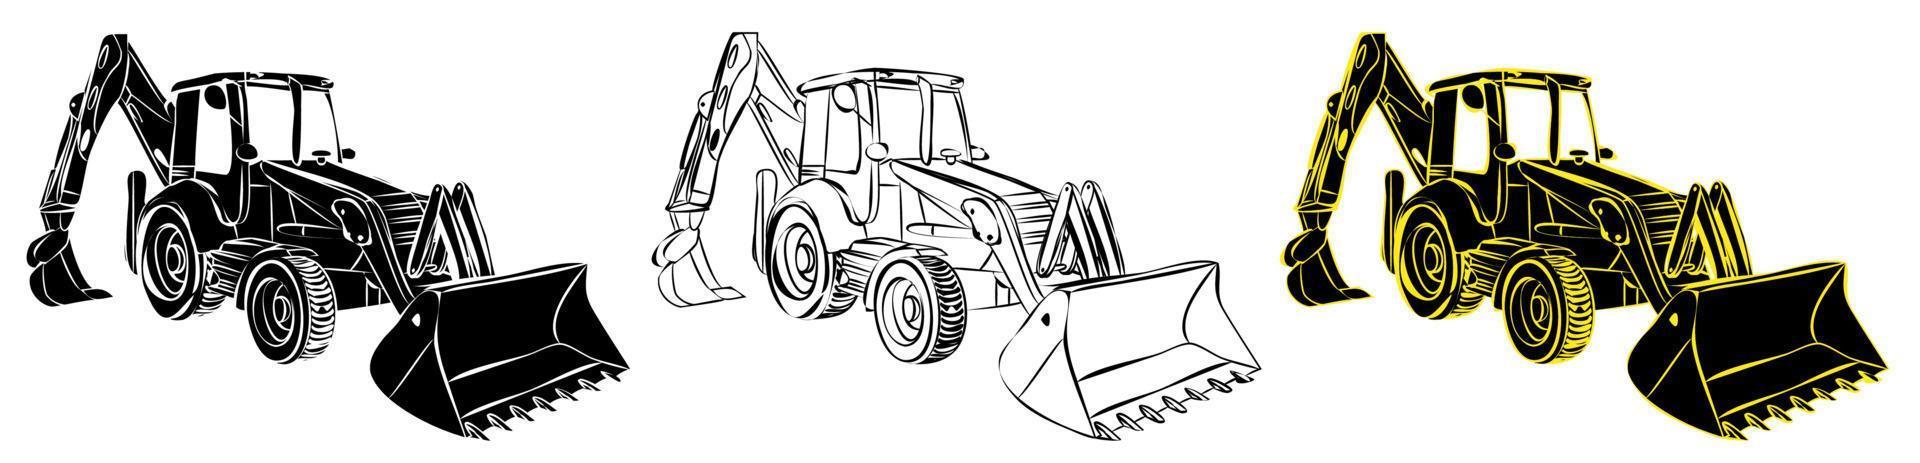 tracteur de matériel de construction dans le style linéaire de croquis. machines et équipements industriels. vecteur isolé sur blanc